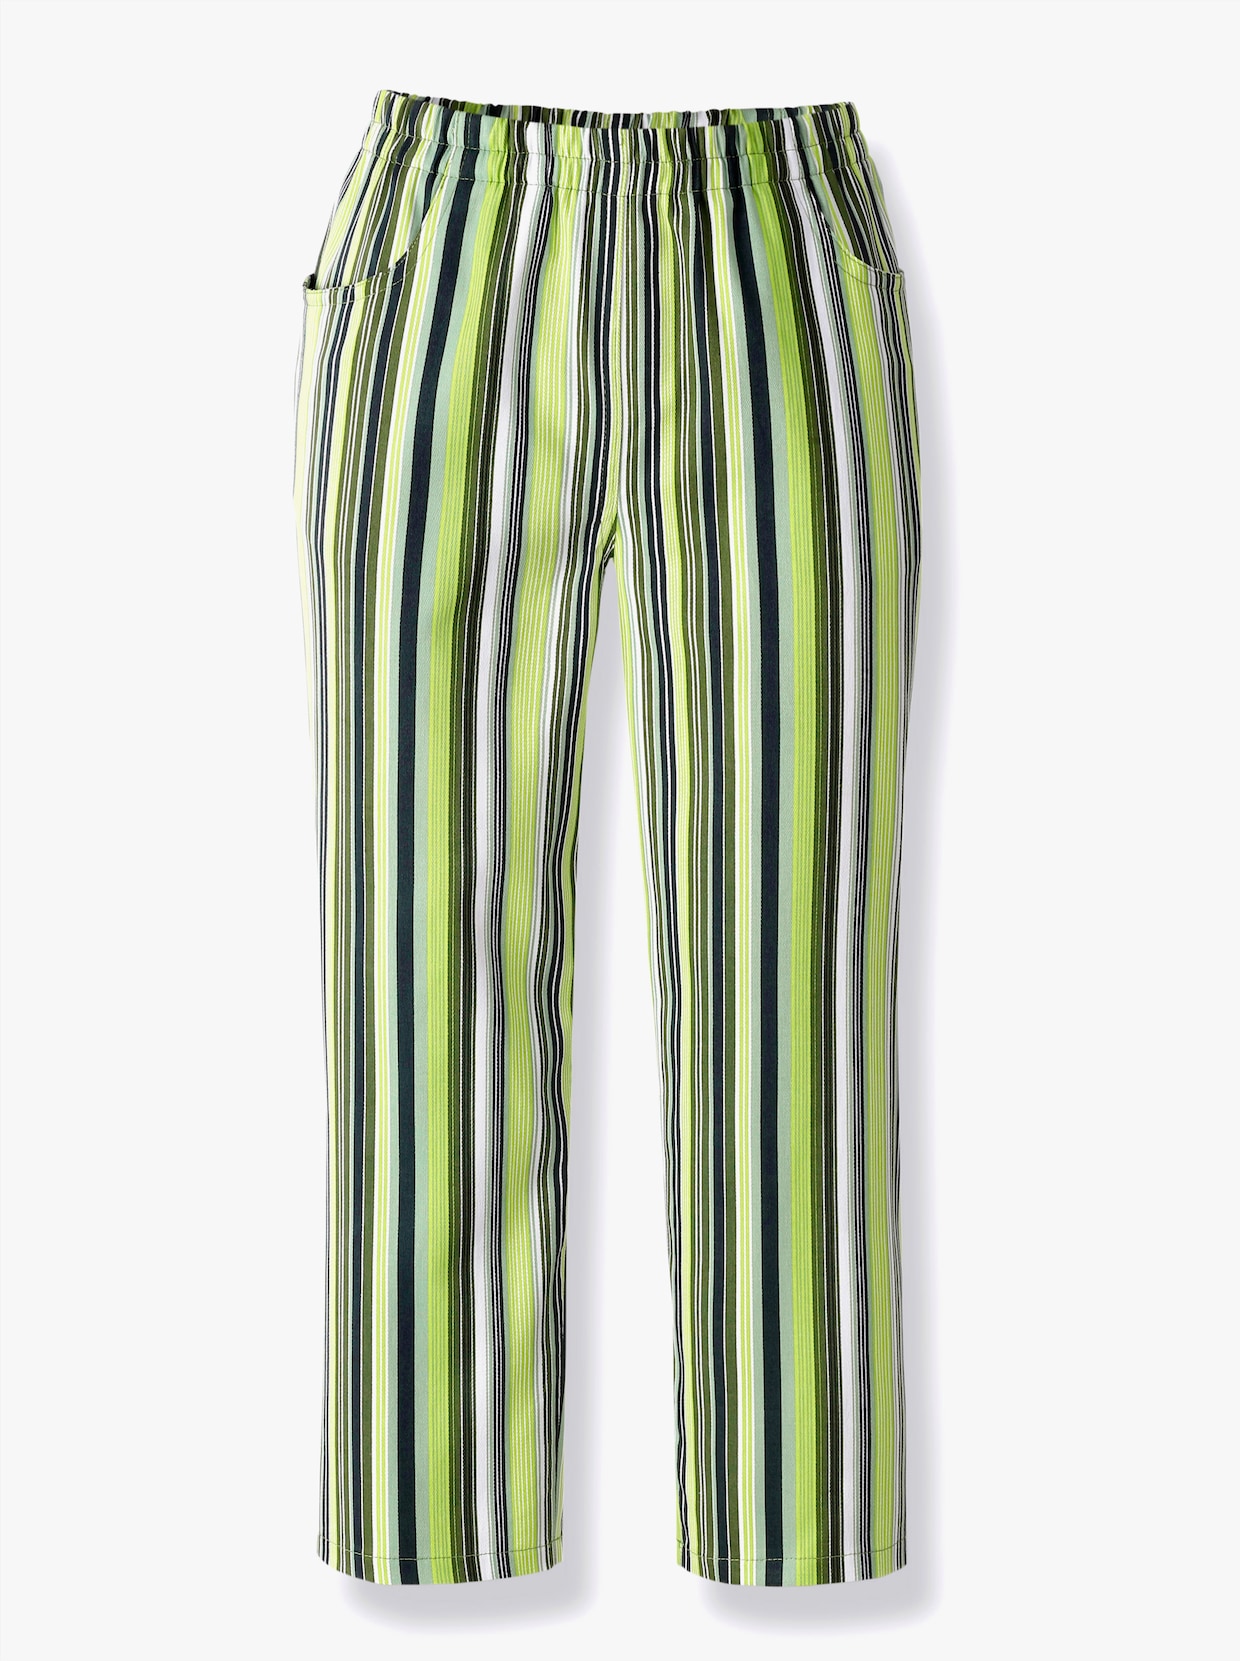 Capri kalhoty - zelená-proužek